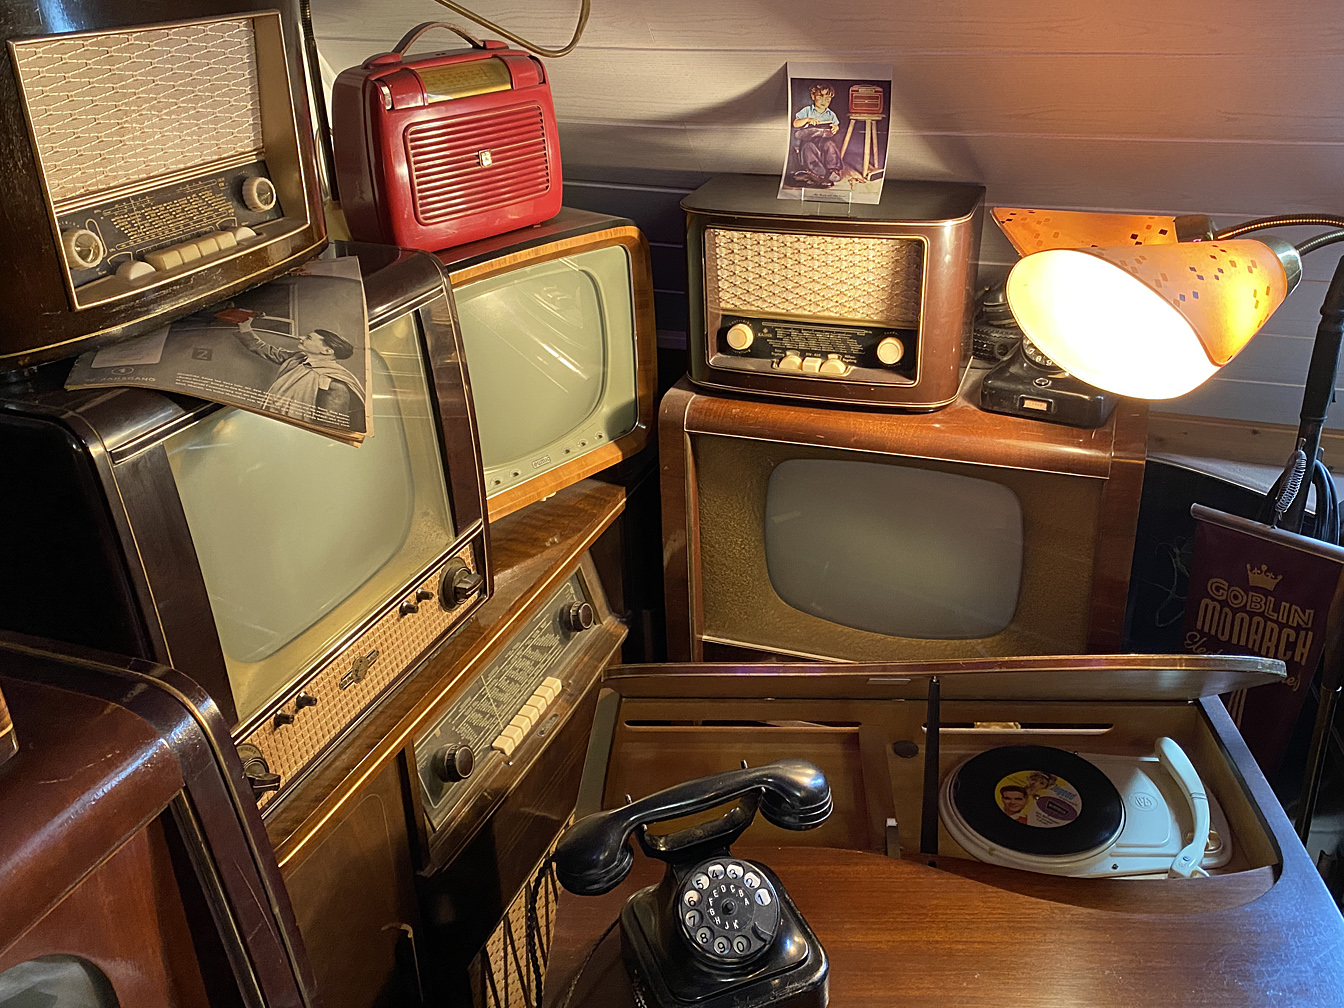 Historische Rado- und Fernsehgeräte, eine alte Lampe und ein Wählscheibentelefon.